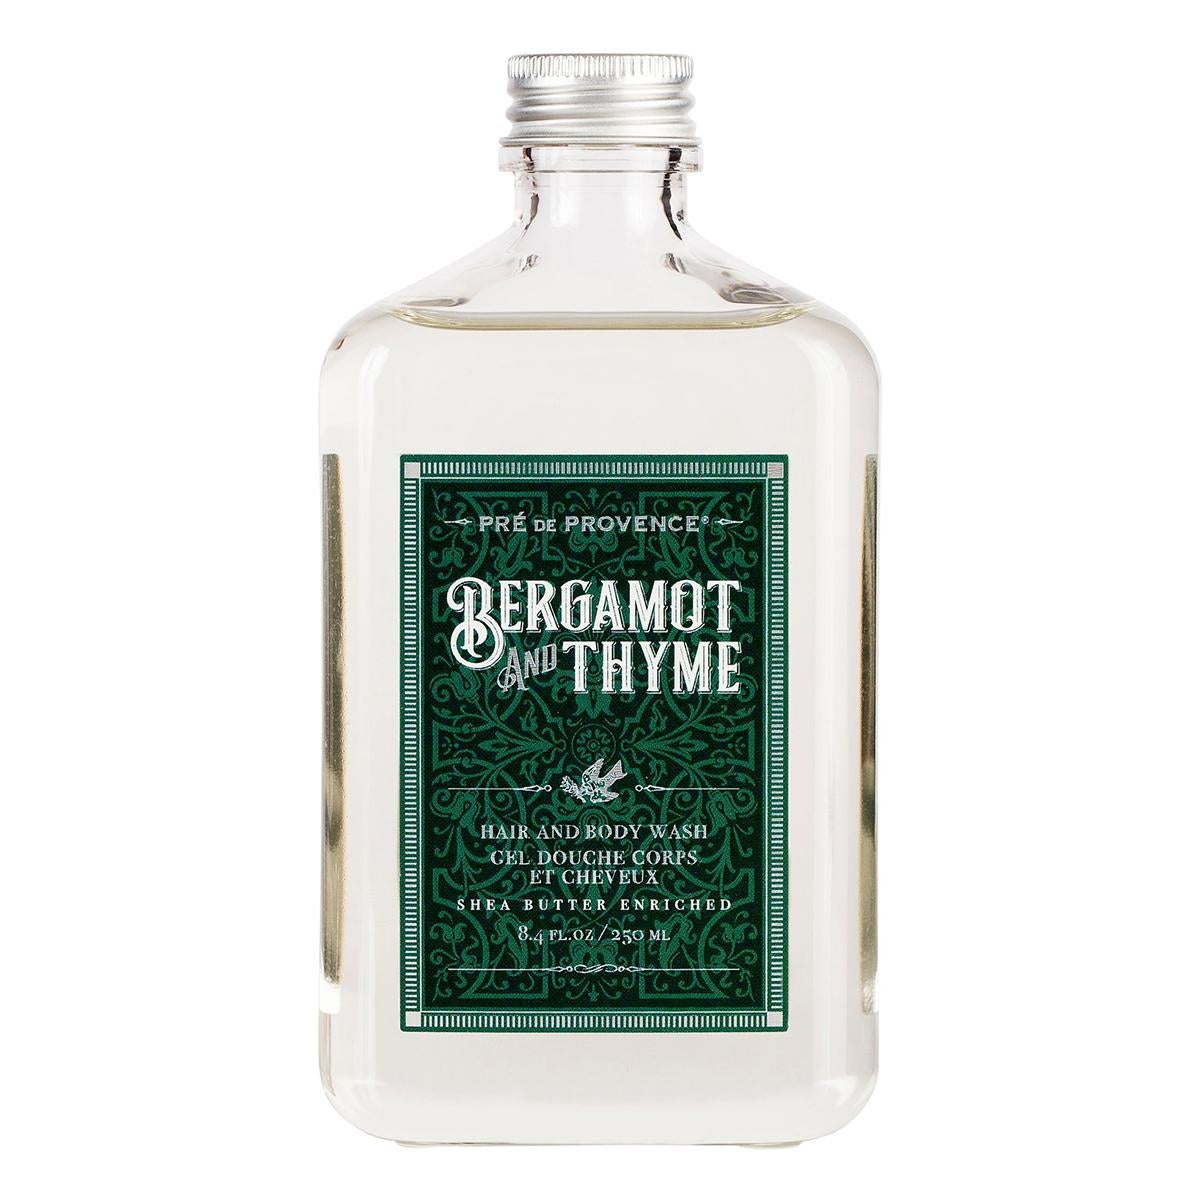 Primary image of H/B Wash- Bergamot + Thyme